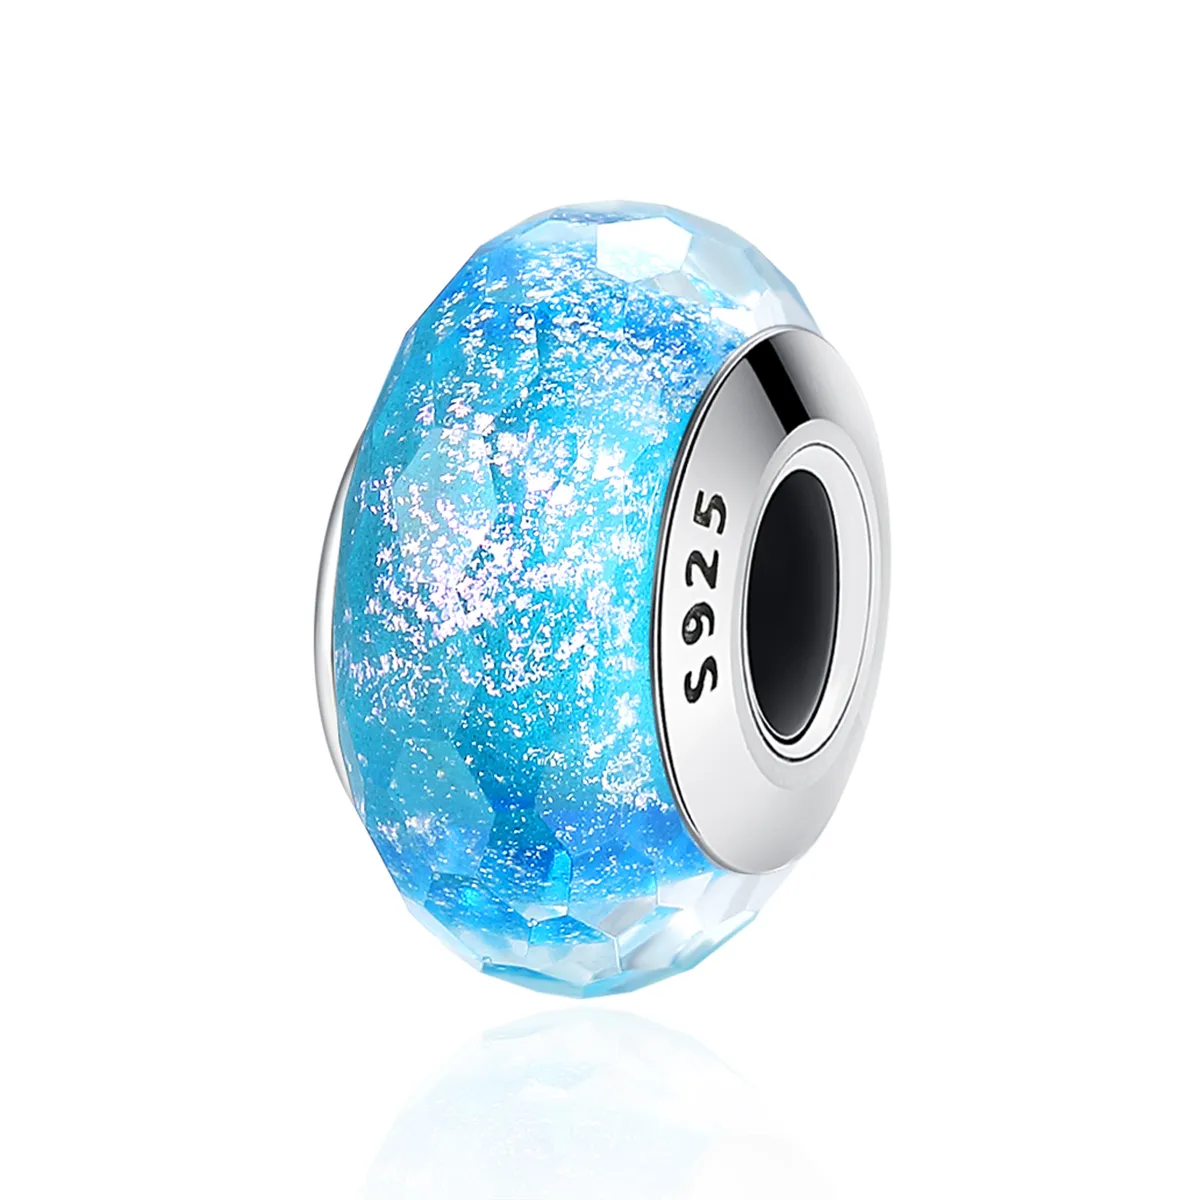 bead pandora de sticlă murano albastră în stilul pandora scz054